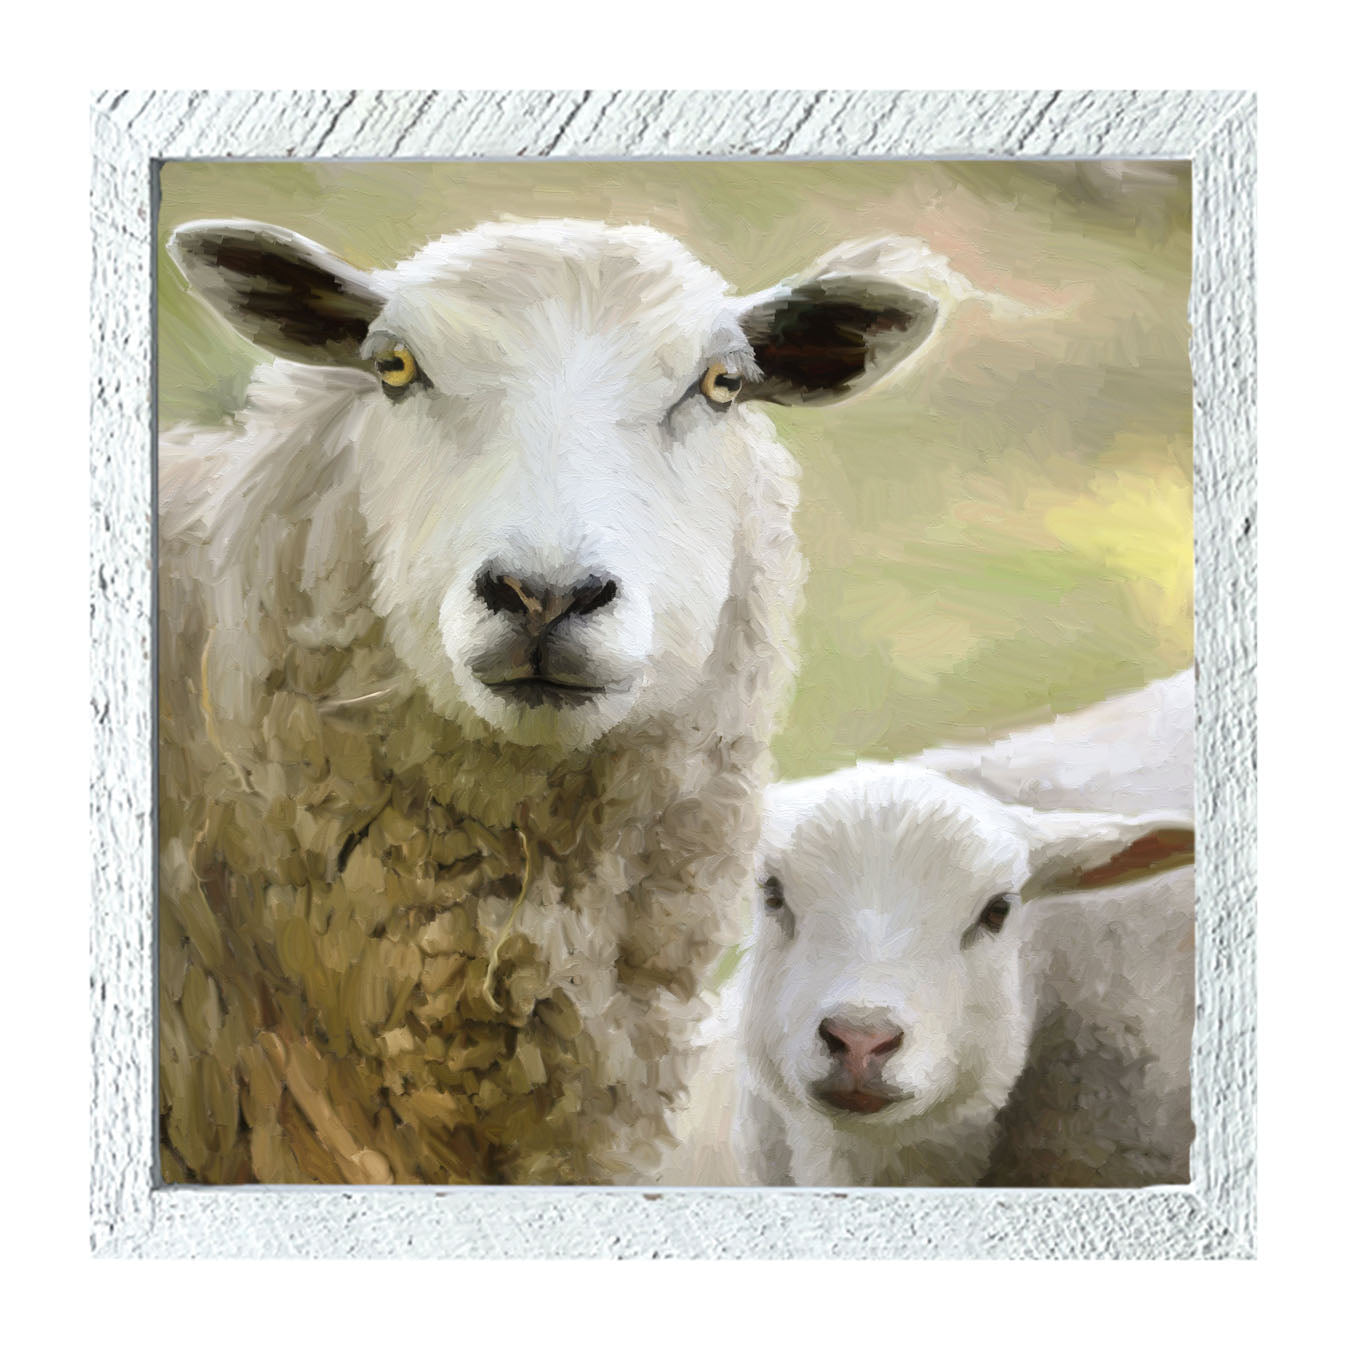 Sheep and Lamb